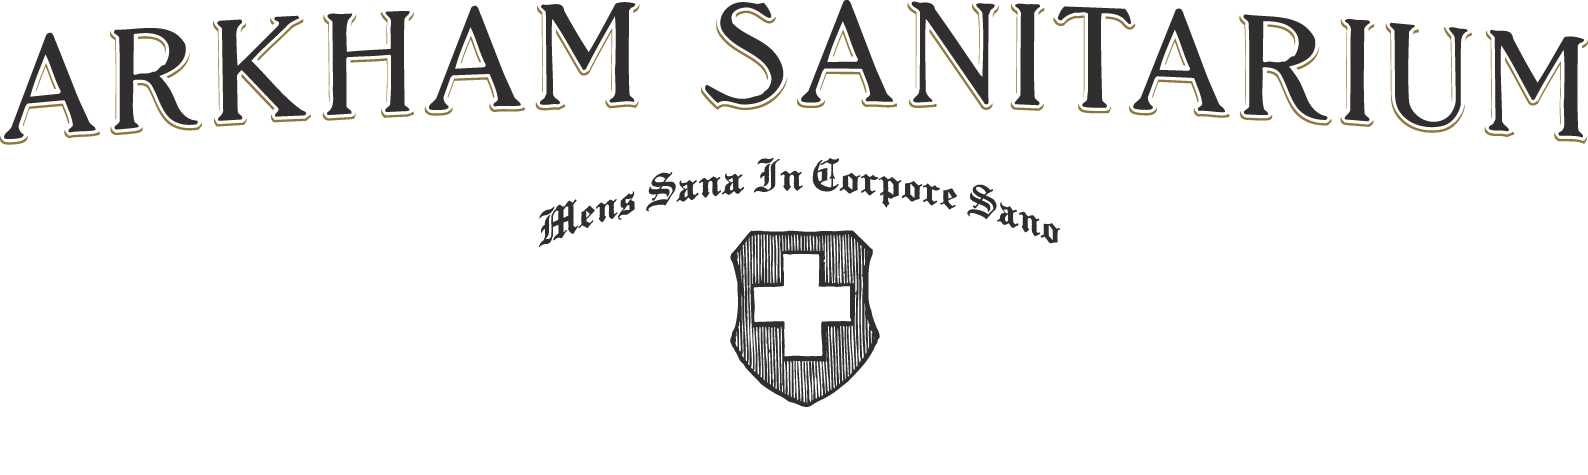 Arkham Sanitarium logo